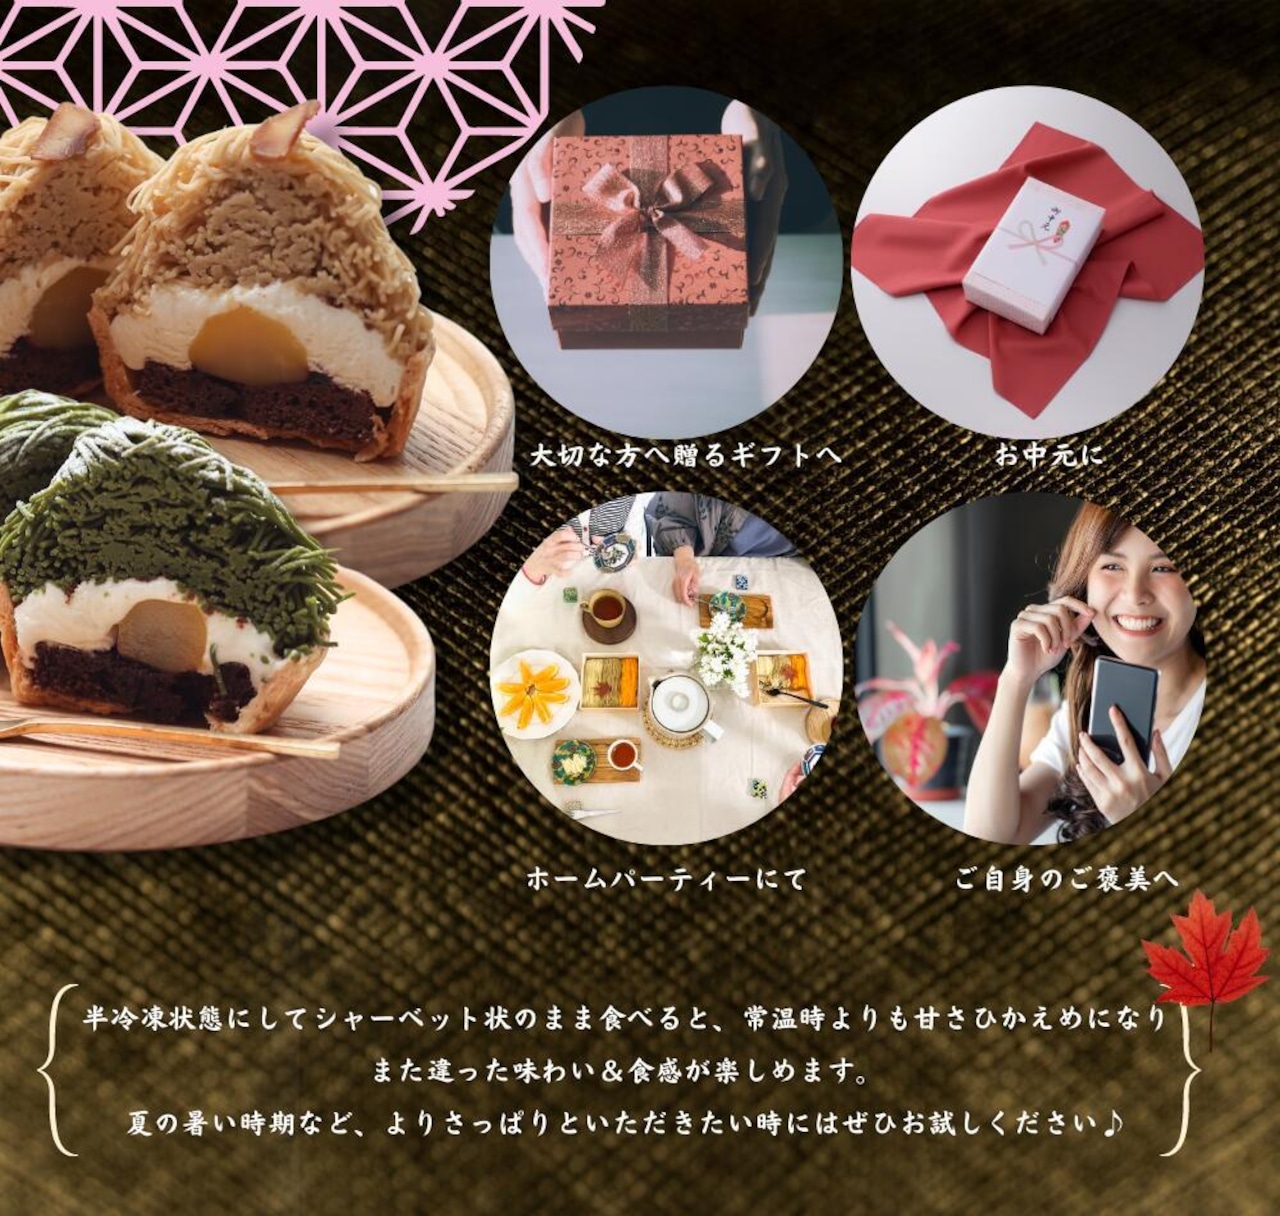 日本茶モンブラン(送料無料) 1日限定20個  高級 スイーツ ギフトお取り寄せ インスタ映え  スイーツ モンブラン 和菓子 洋菓子 プレゼント ホワイトデー